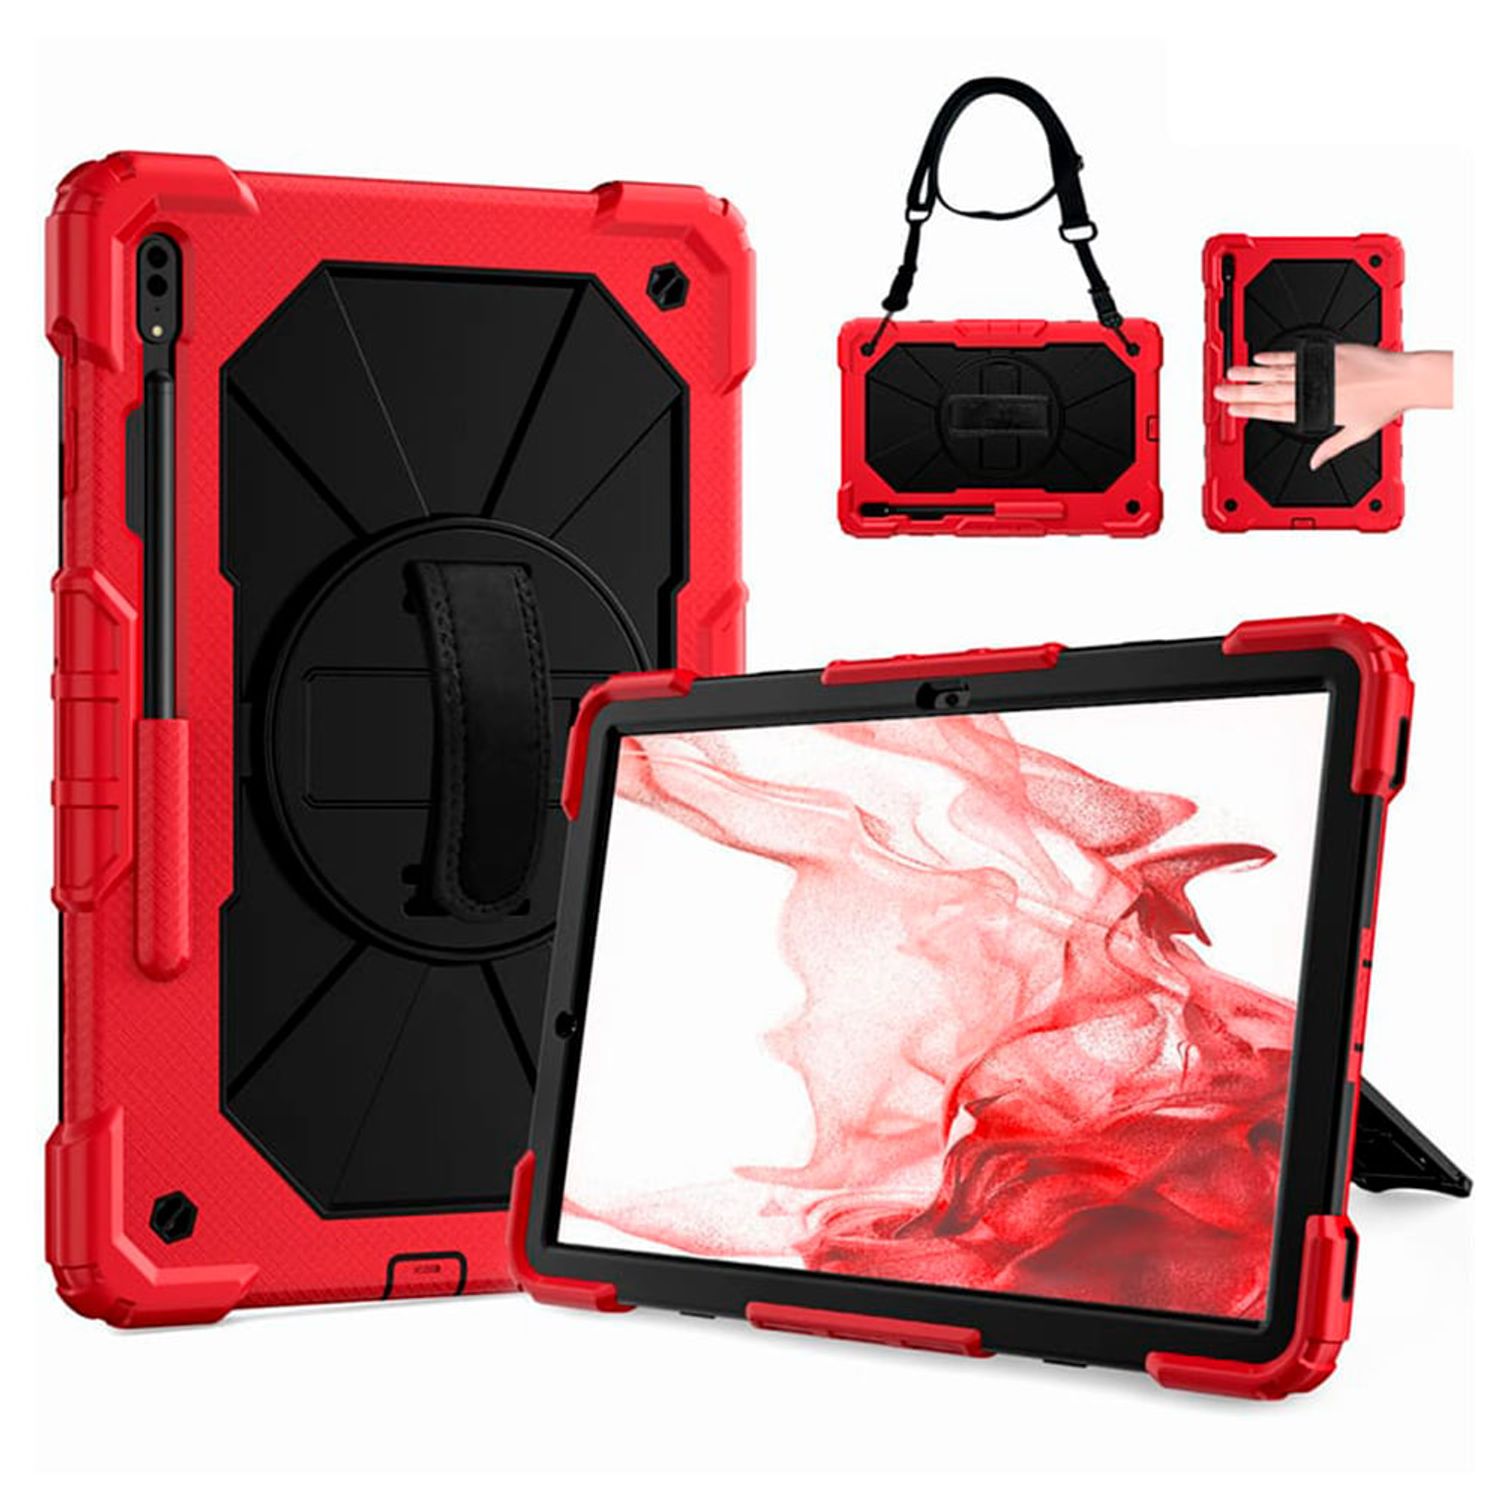 Majestuoso Divertidísimo Antagonista Funda para iPad 2 Armor Extreme Rojo Antishock Resistente Resistente a  Caidas y Golpes I Oechsle - Oechsle